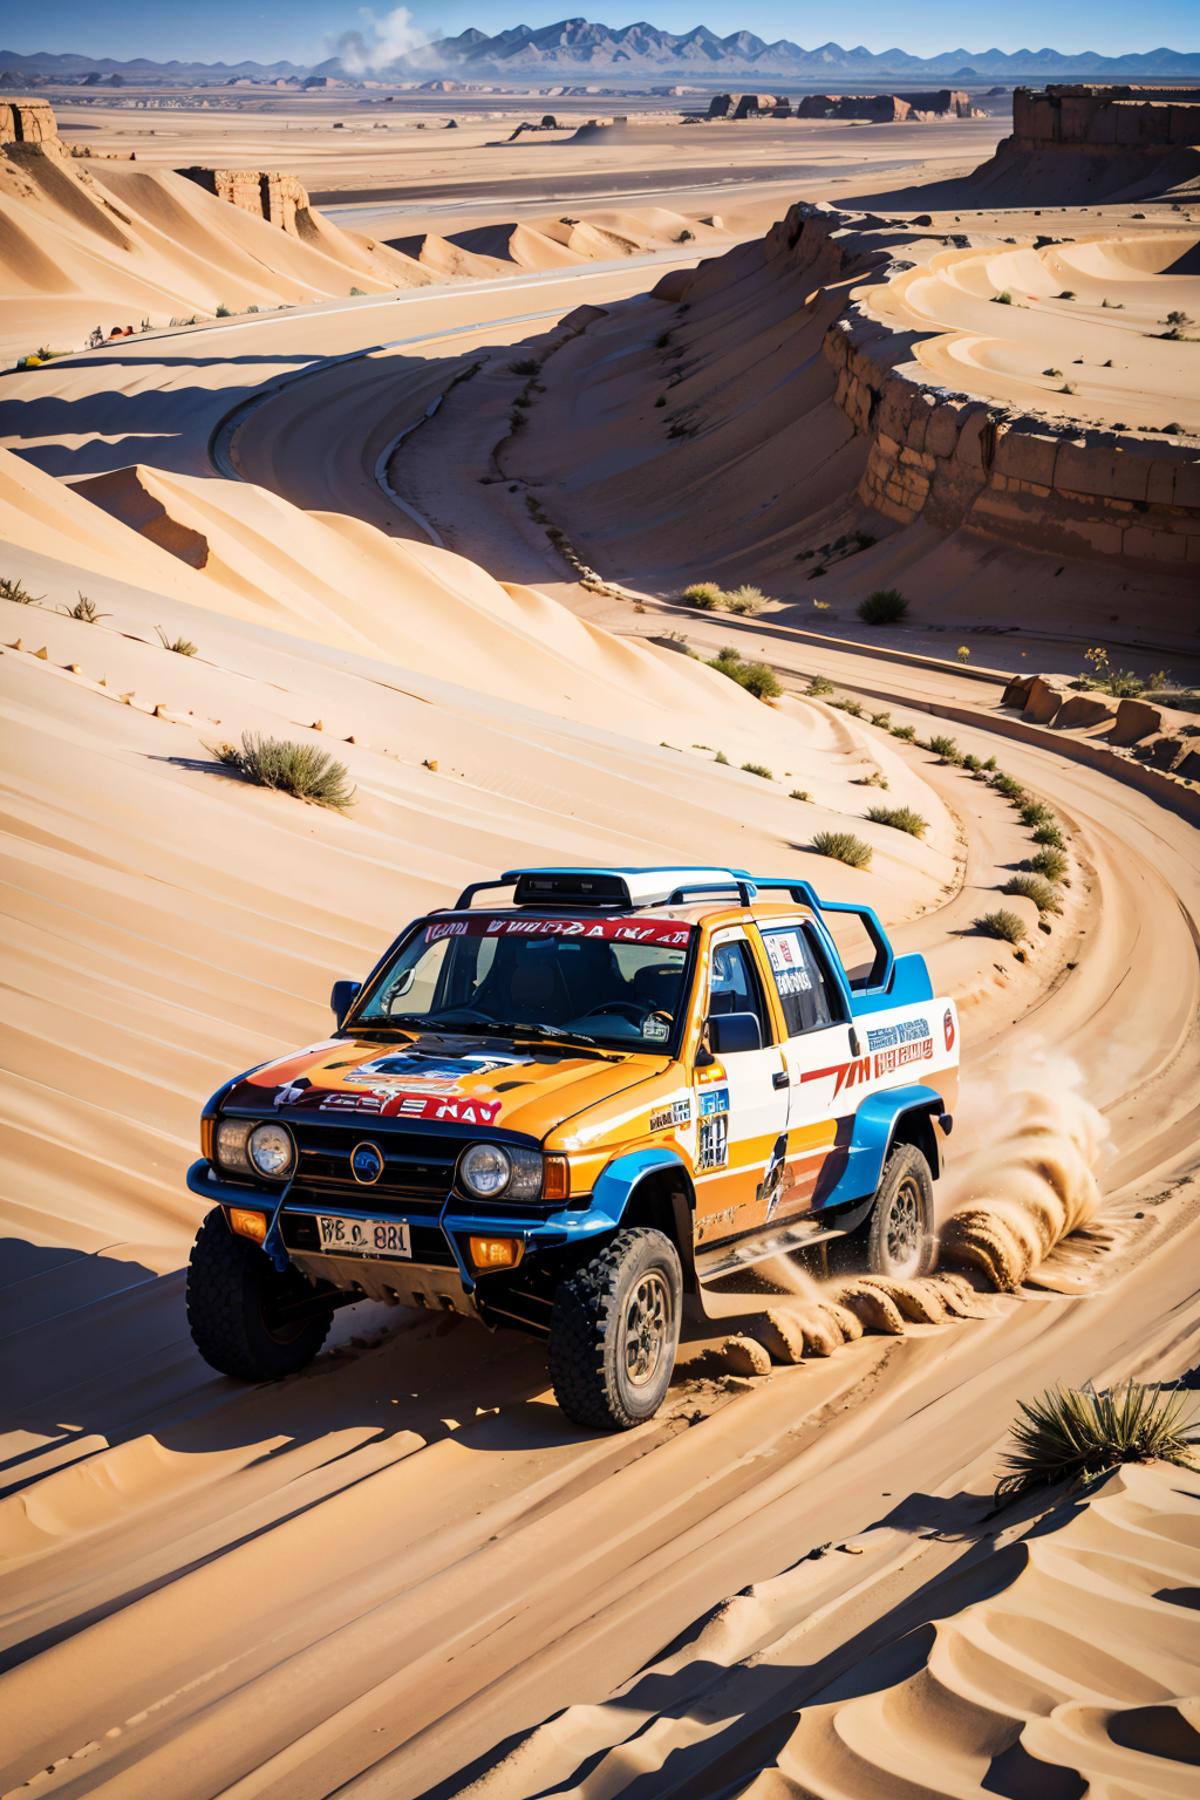 Paris Dakar Rally image by Ggrue